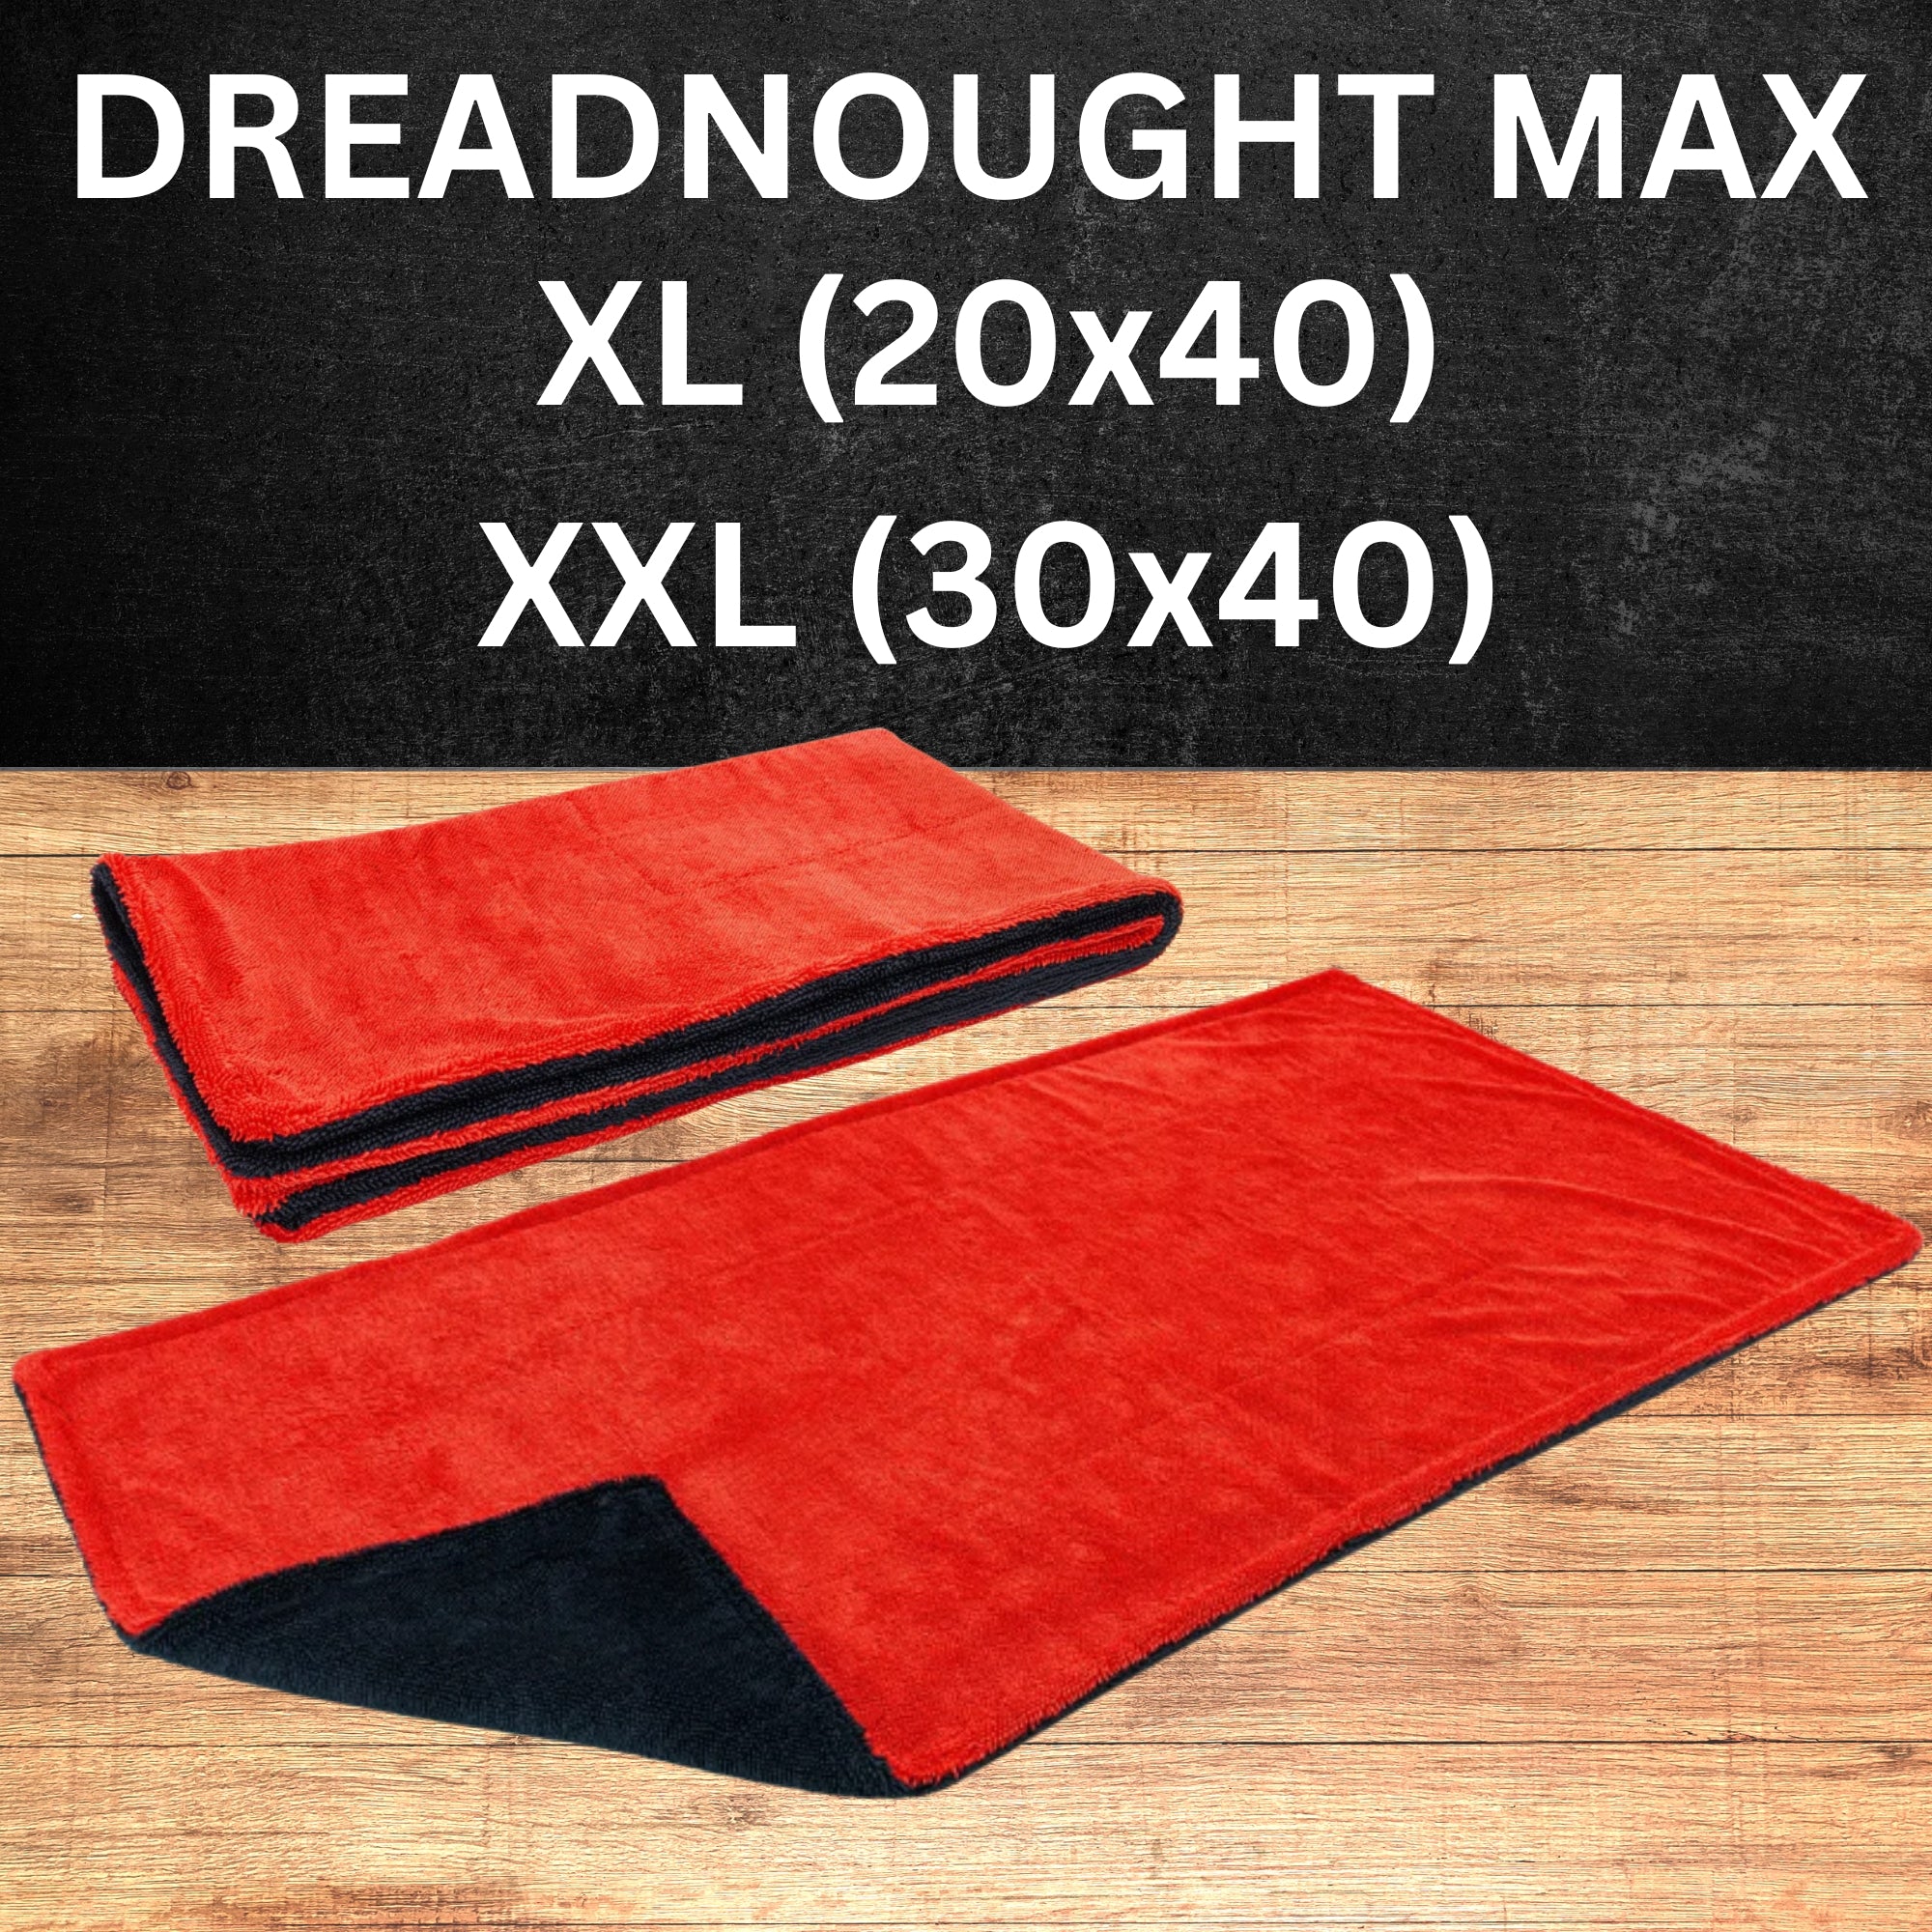 Autofiber Drying Towel: XXL Dreadnought Max - Chem-X